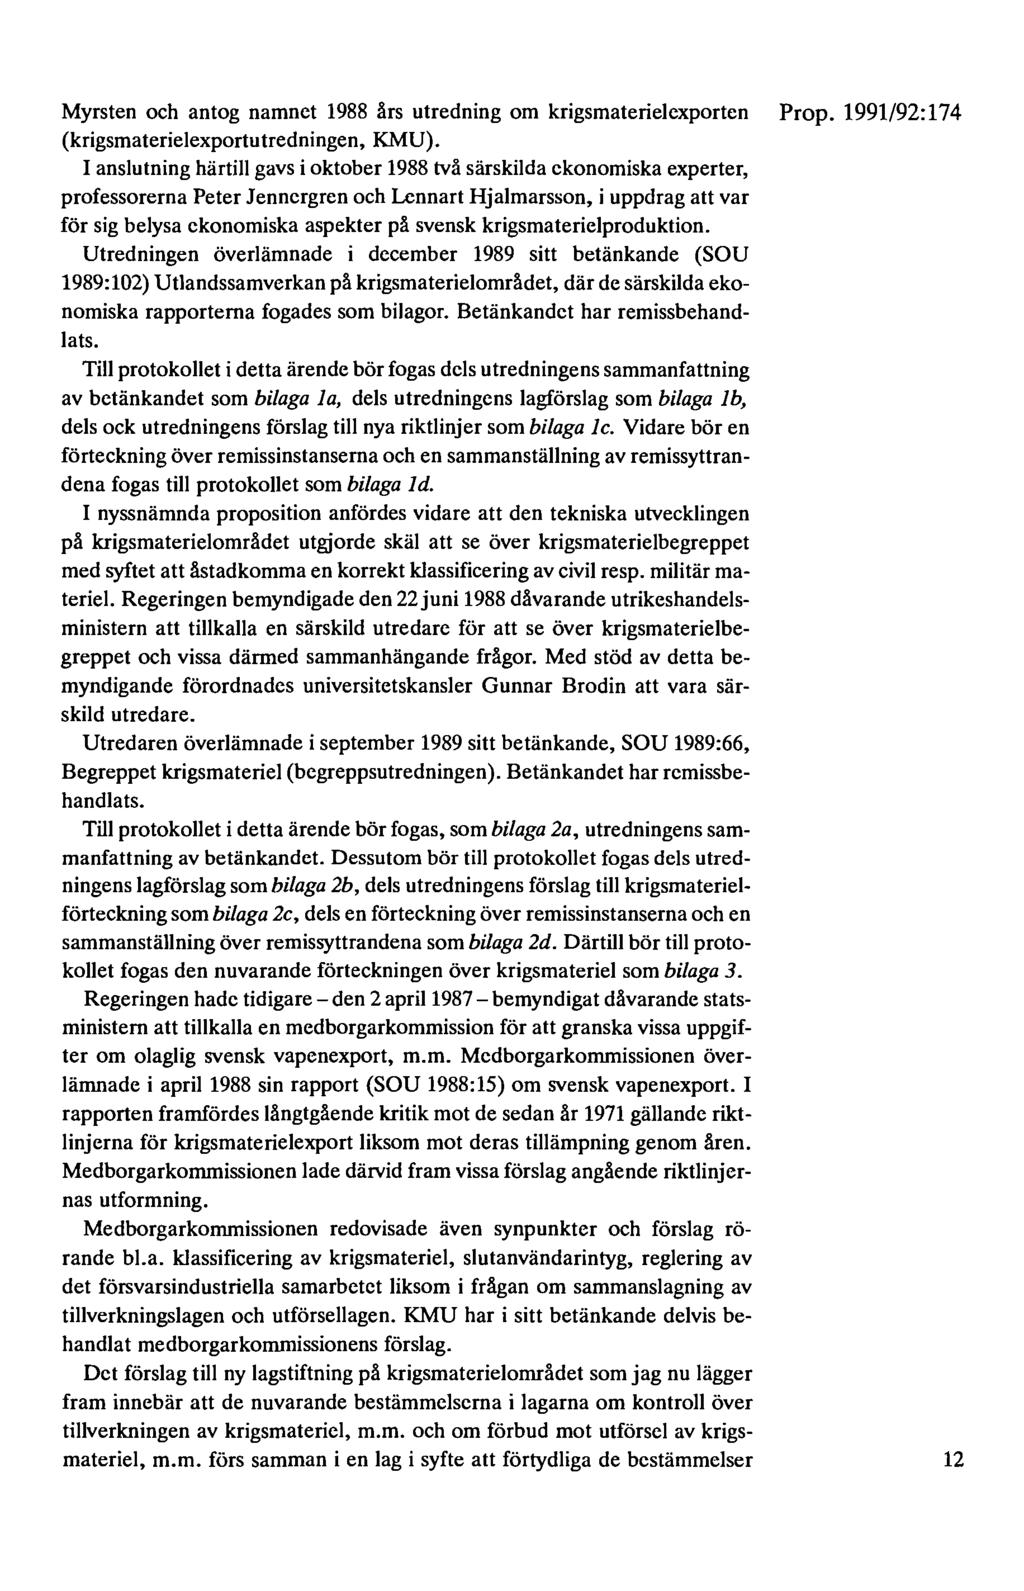 Myrsten och antog namnet 1988 års utredning om krigsmaterielexporten Prop. 1991/92:174 (krigsmaterielexportutredningen, KMU).